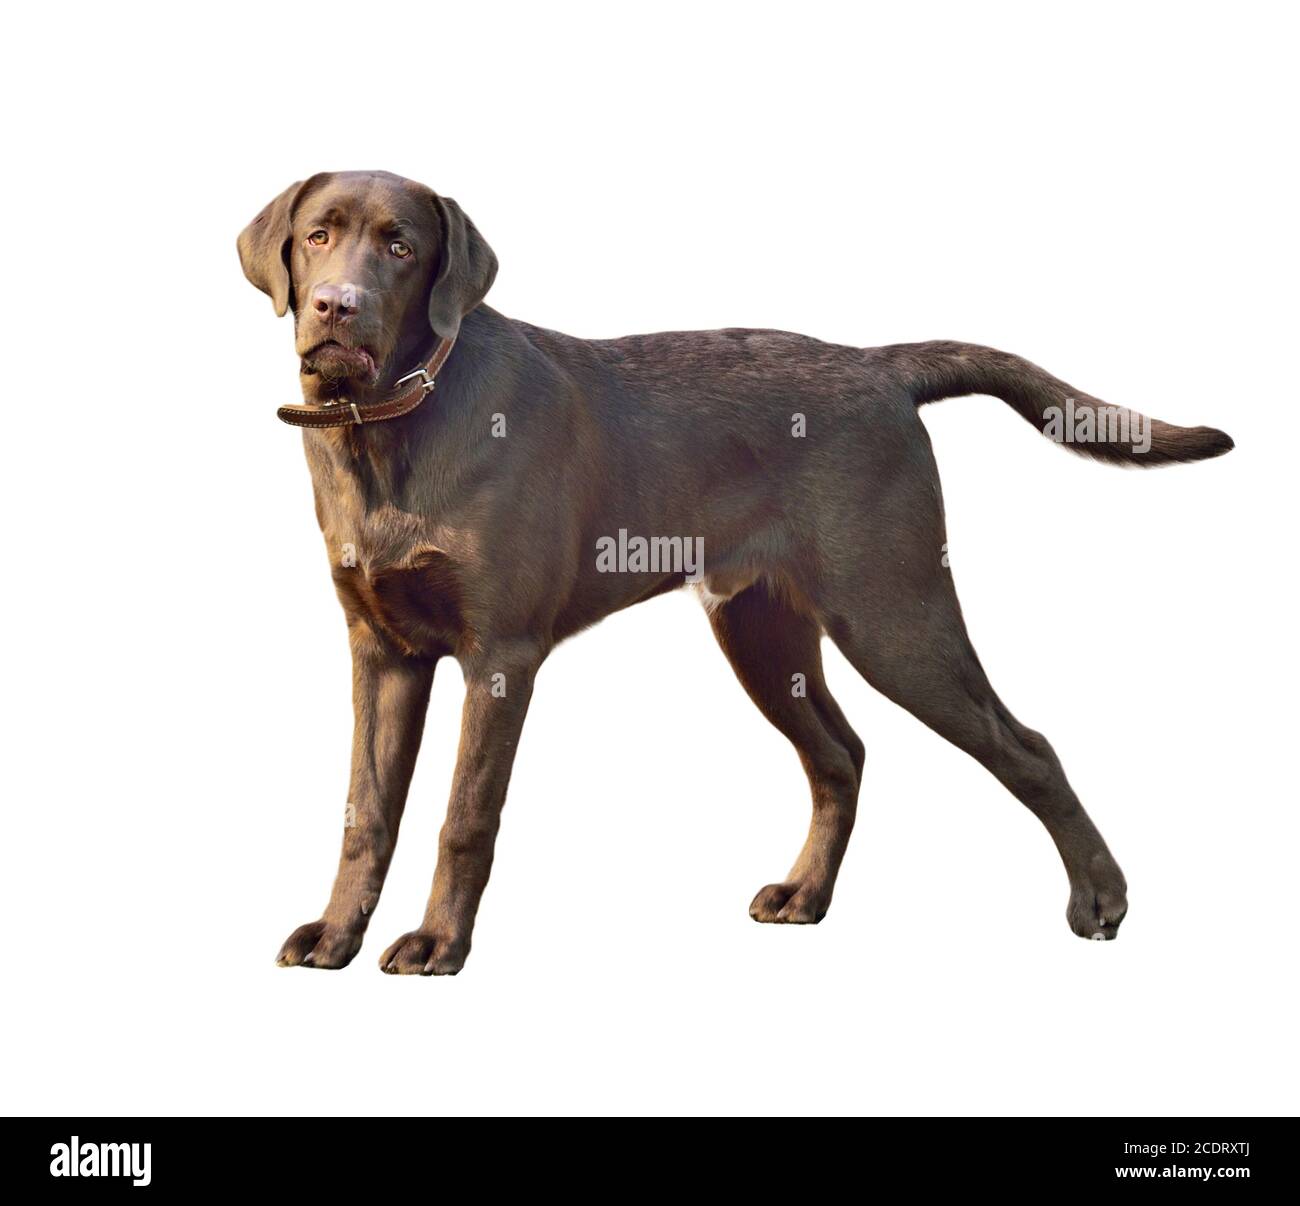 Labrador retriever dog Banque D'Images